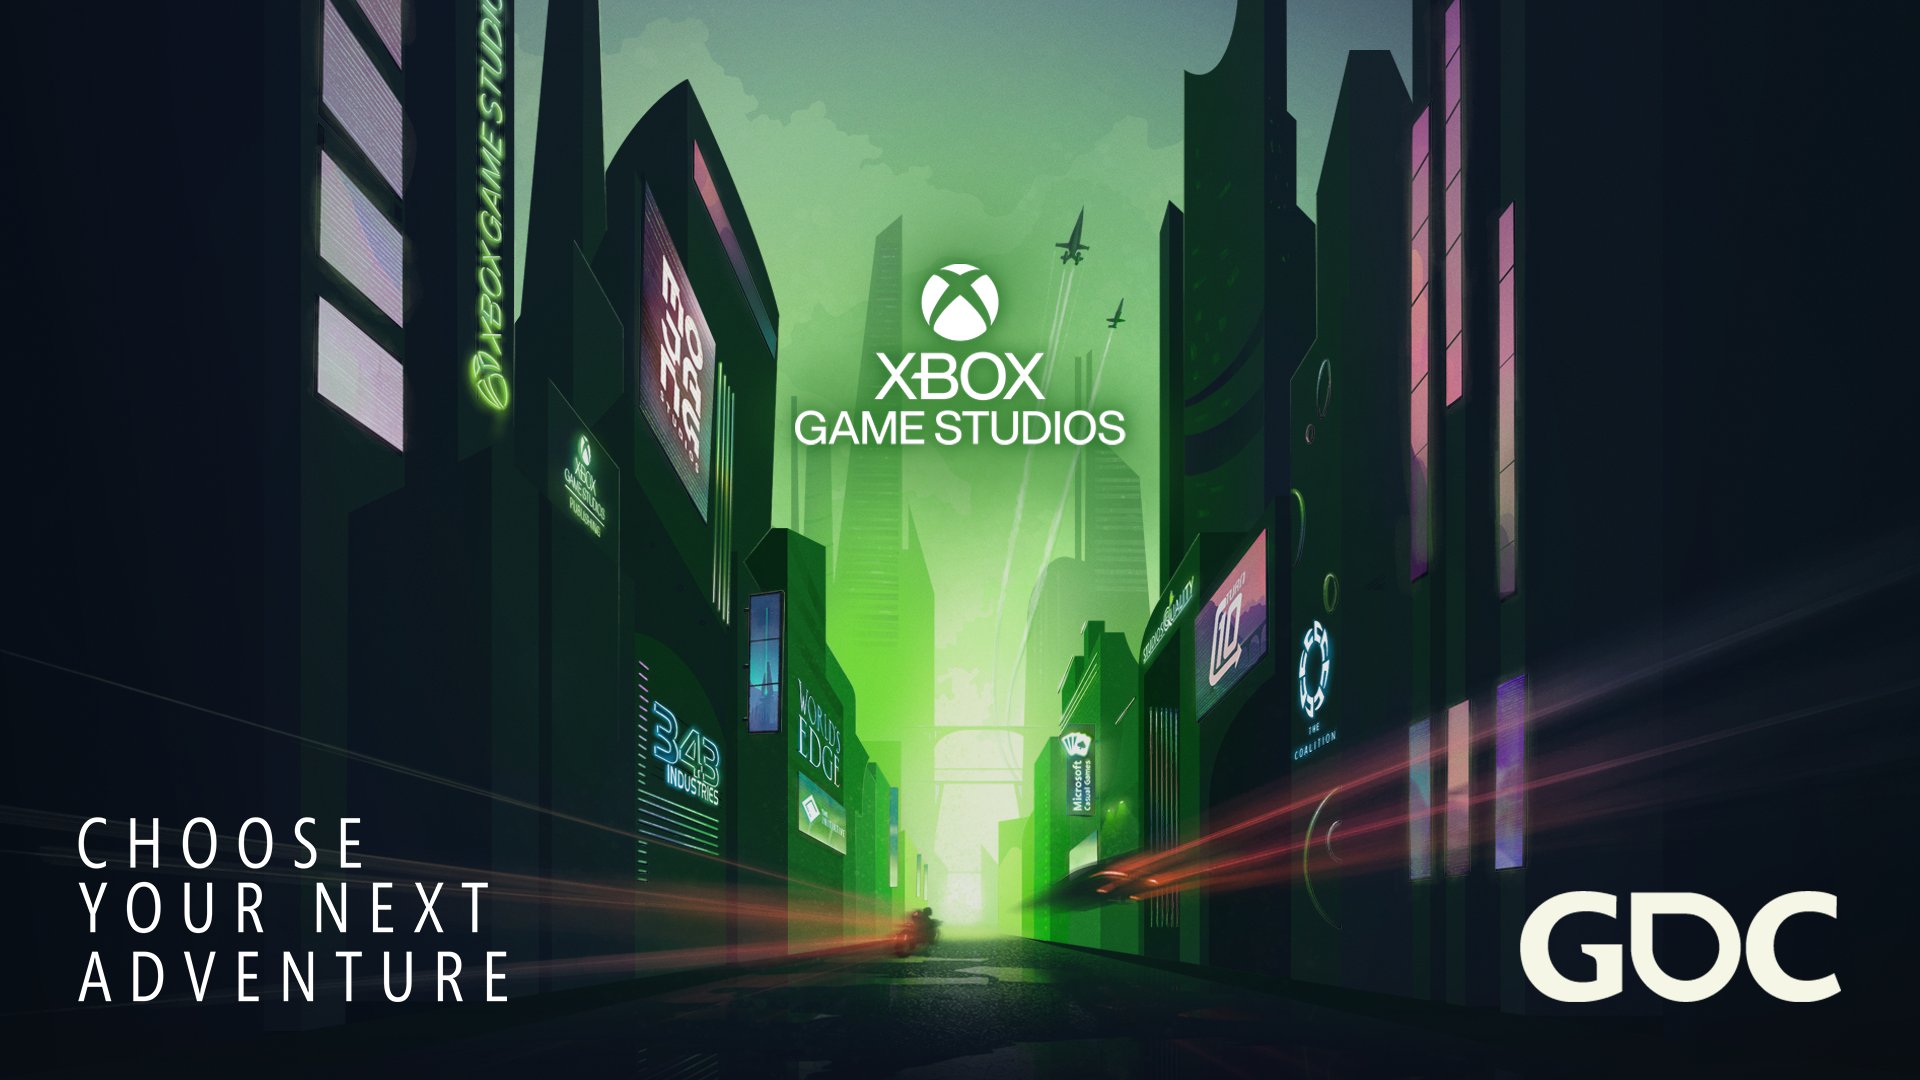 Xbox Game Studios está trabalhando à quanto tempo nos próximos